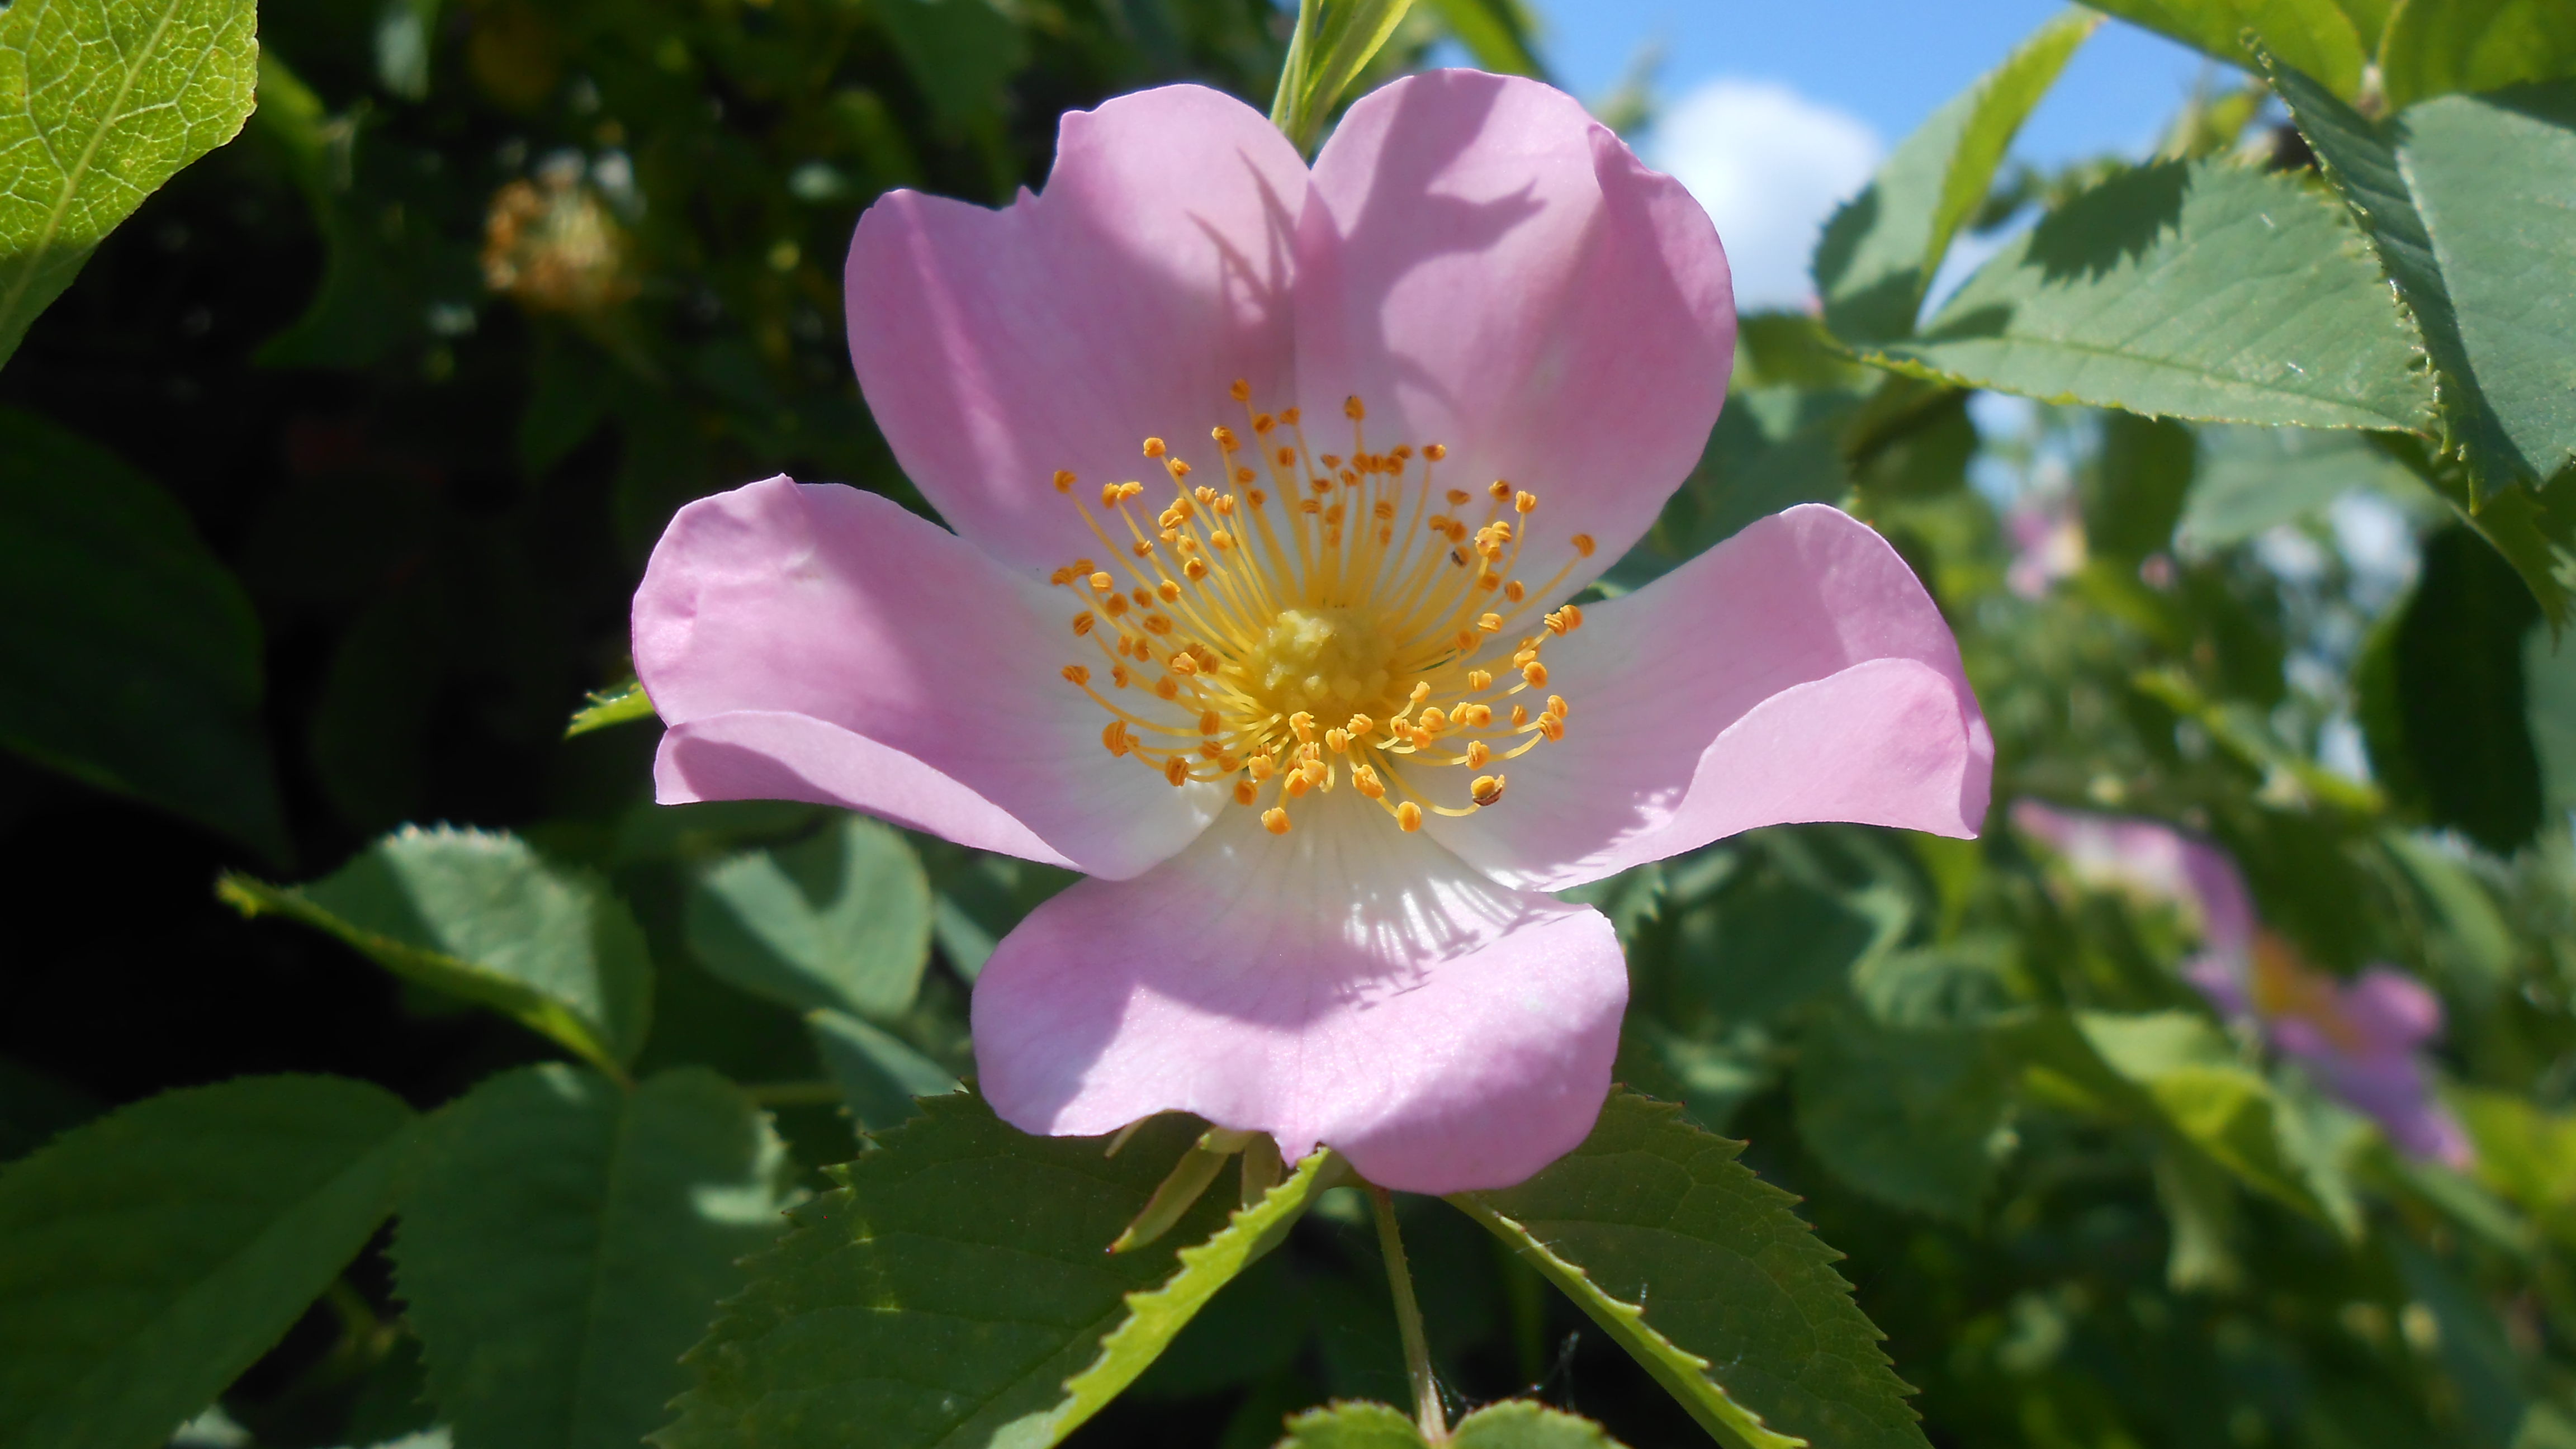 Rose blossom photo